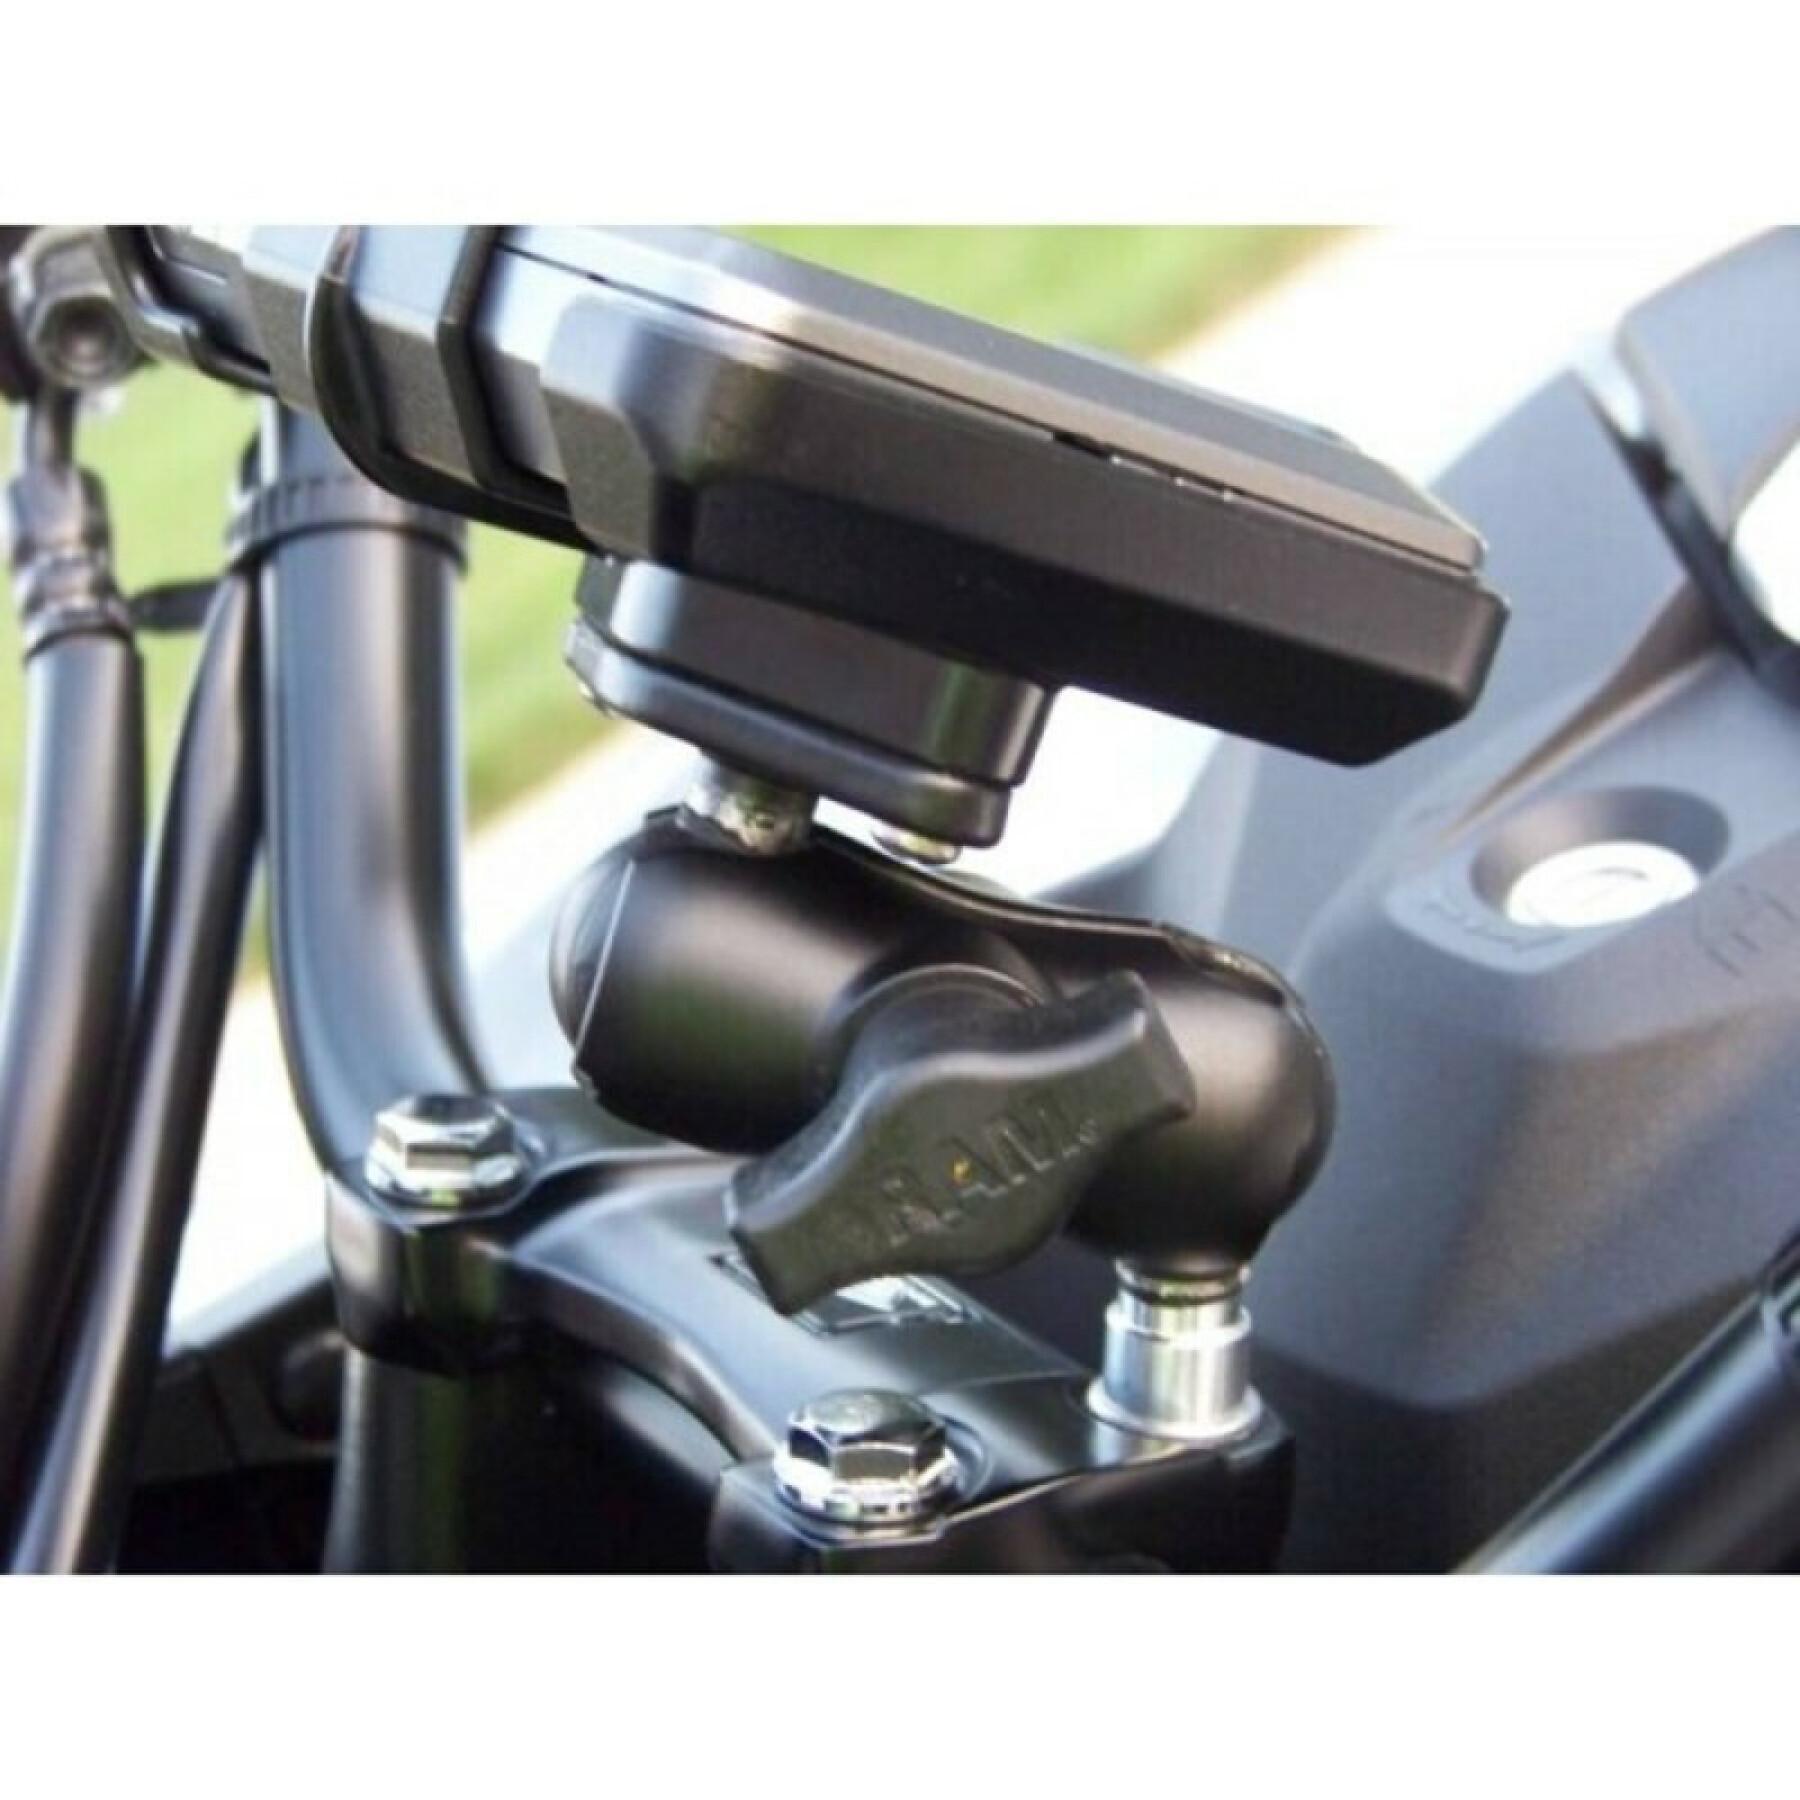 Soporte para smartphone para la base de la moto, fijación en el guardamonte mediante pernos de bola b RAM Mounts